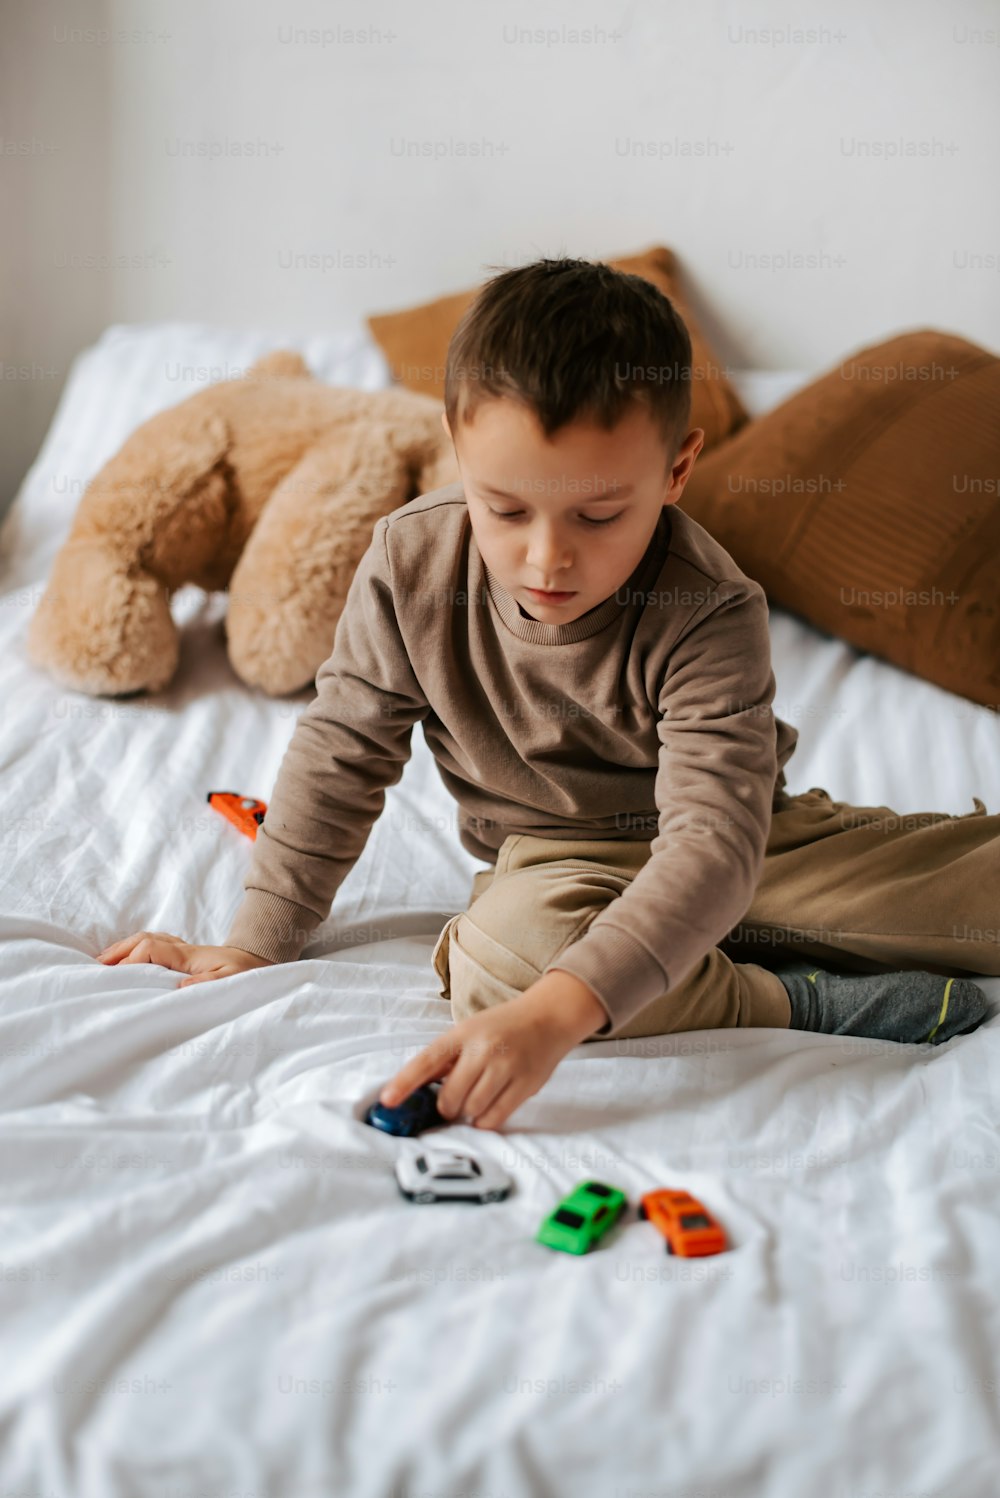 un niño sentado en una cama jugando con juguetes